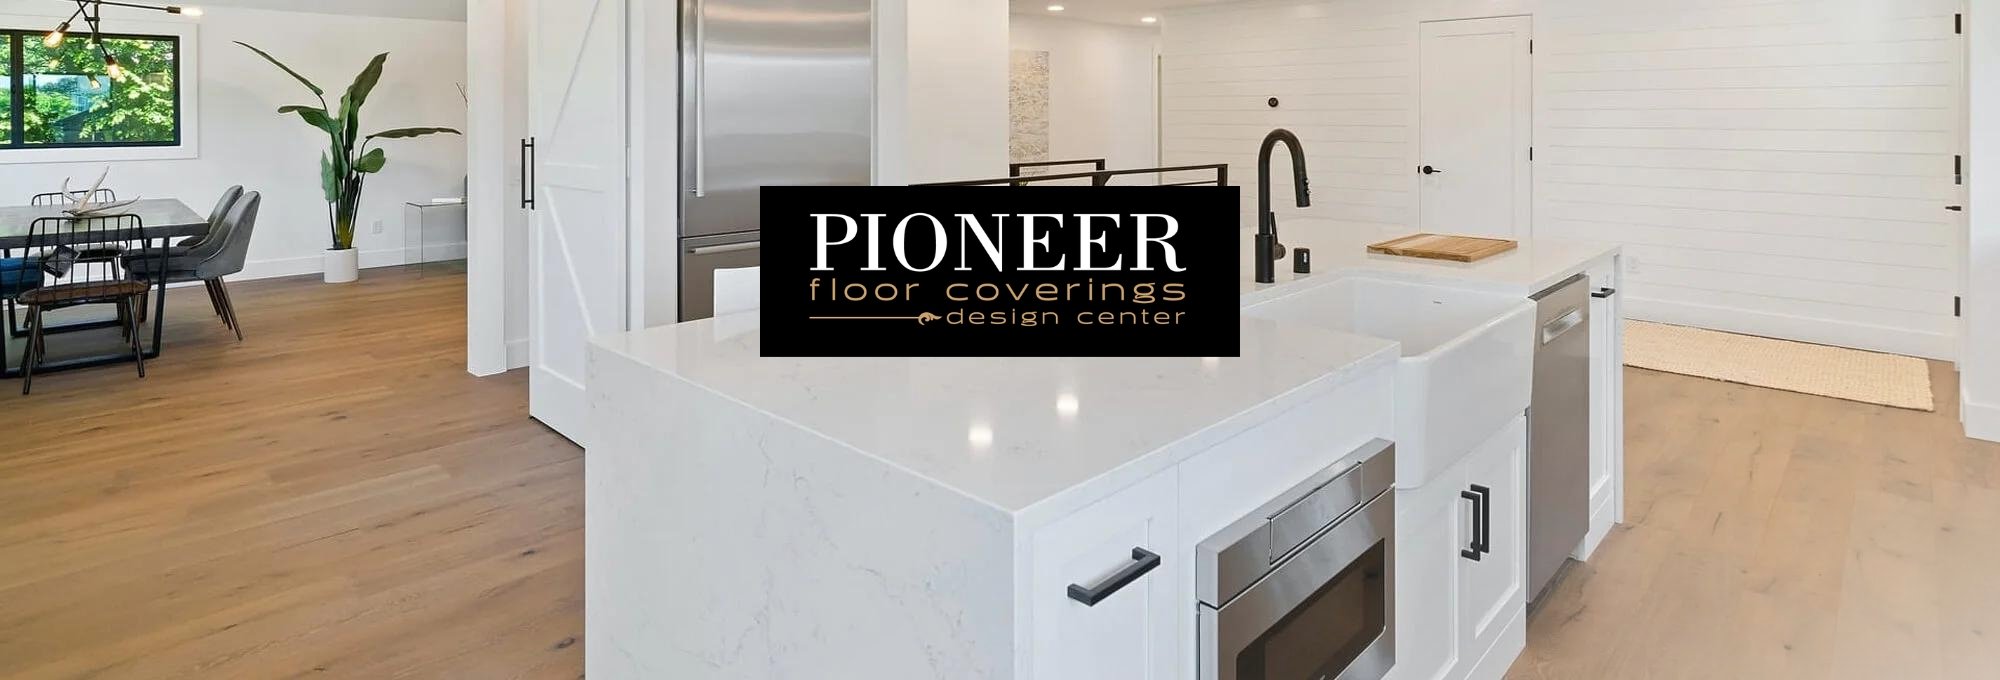 Flooring by Pioneer Floor Coverings